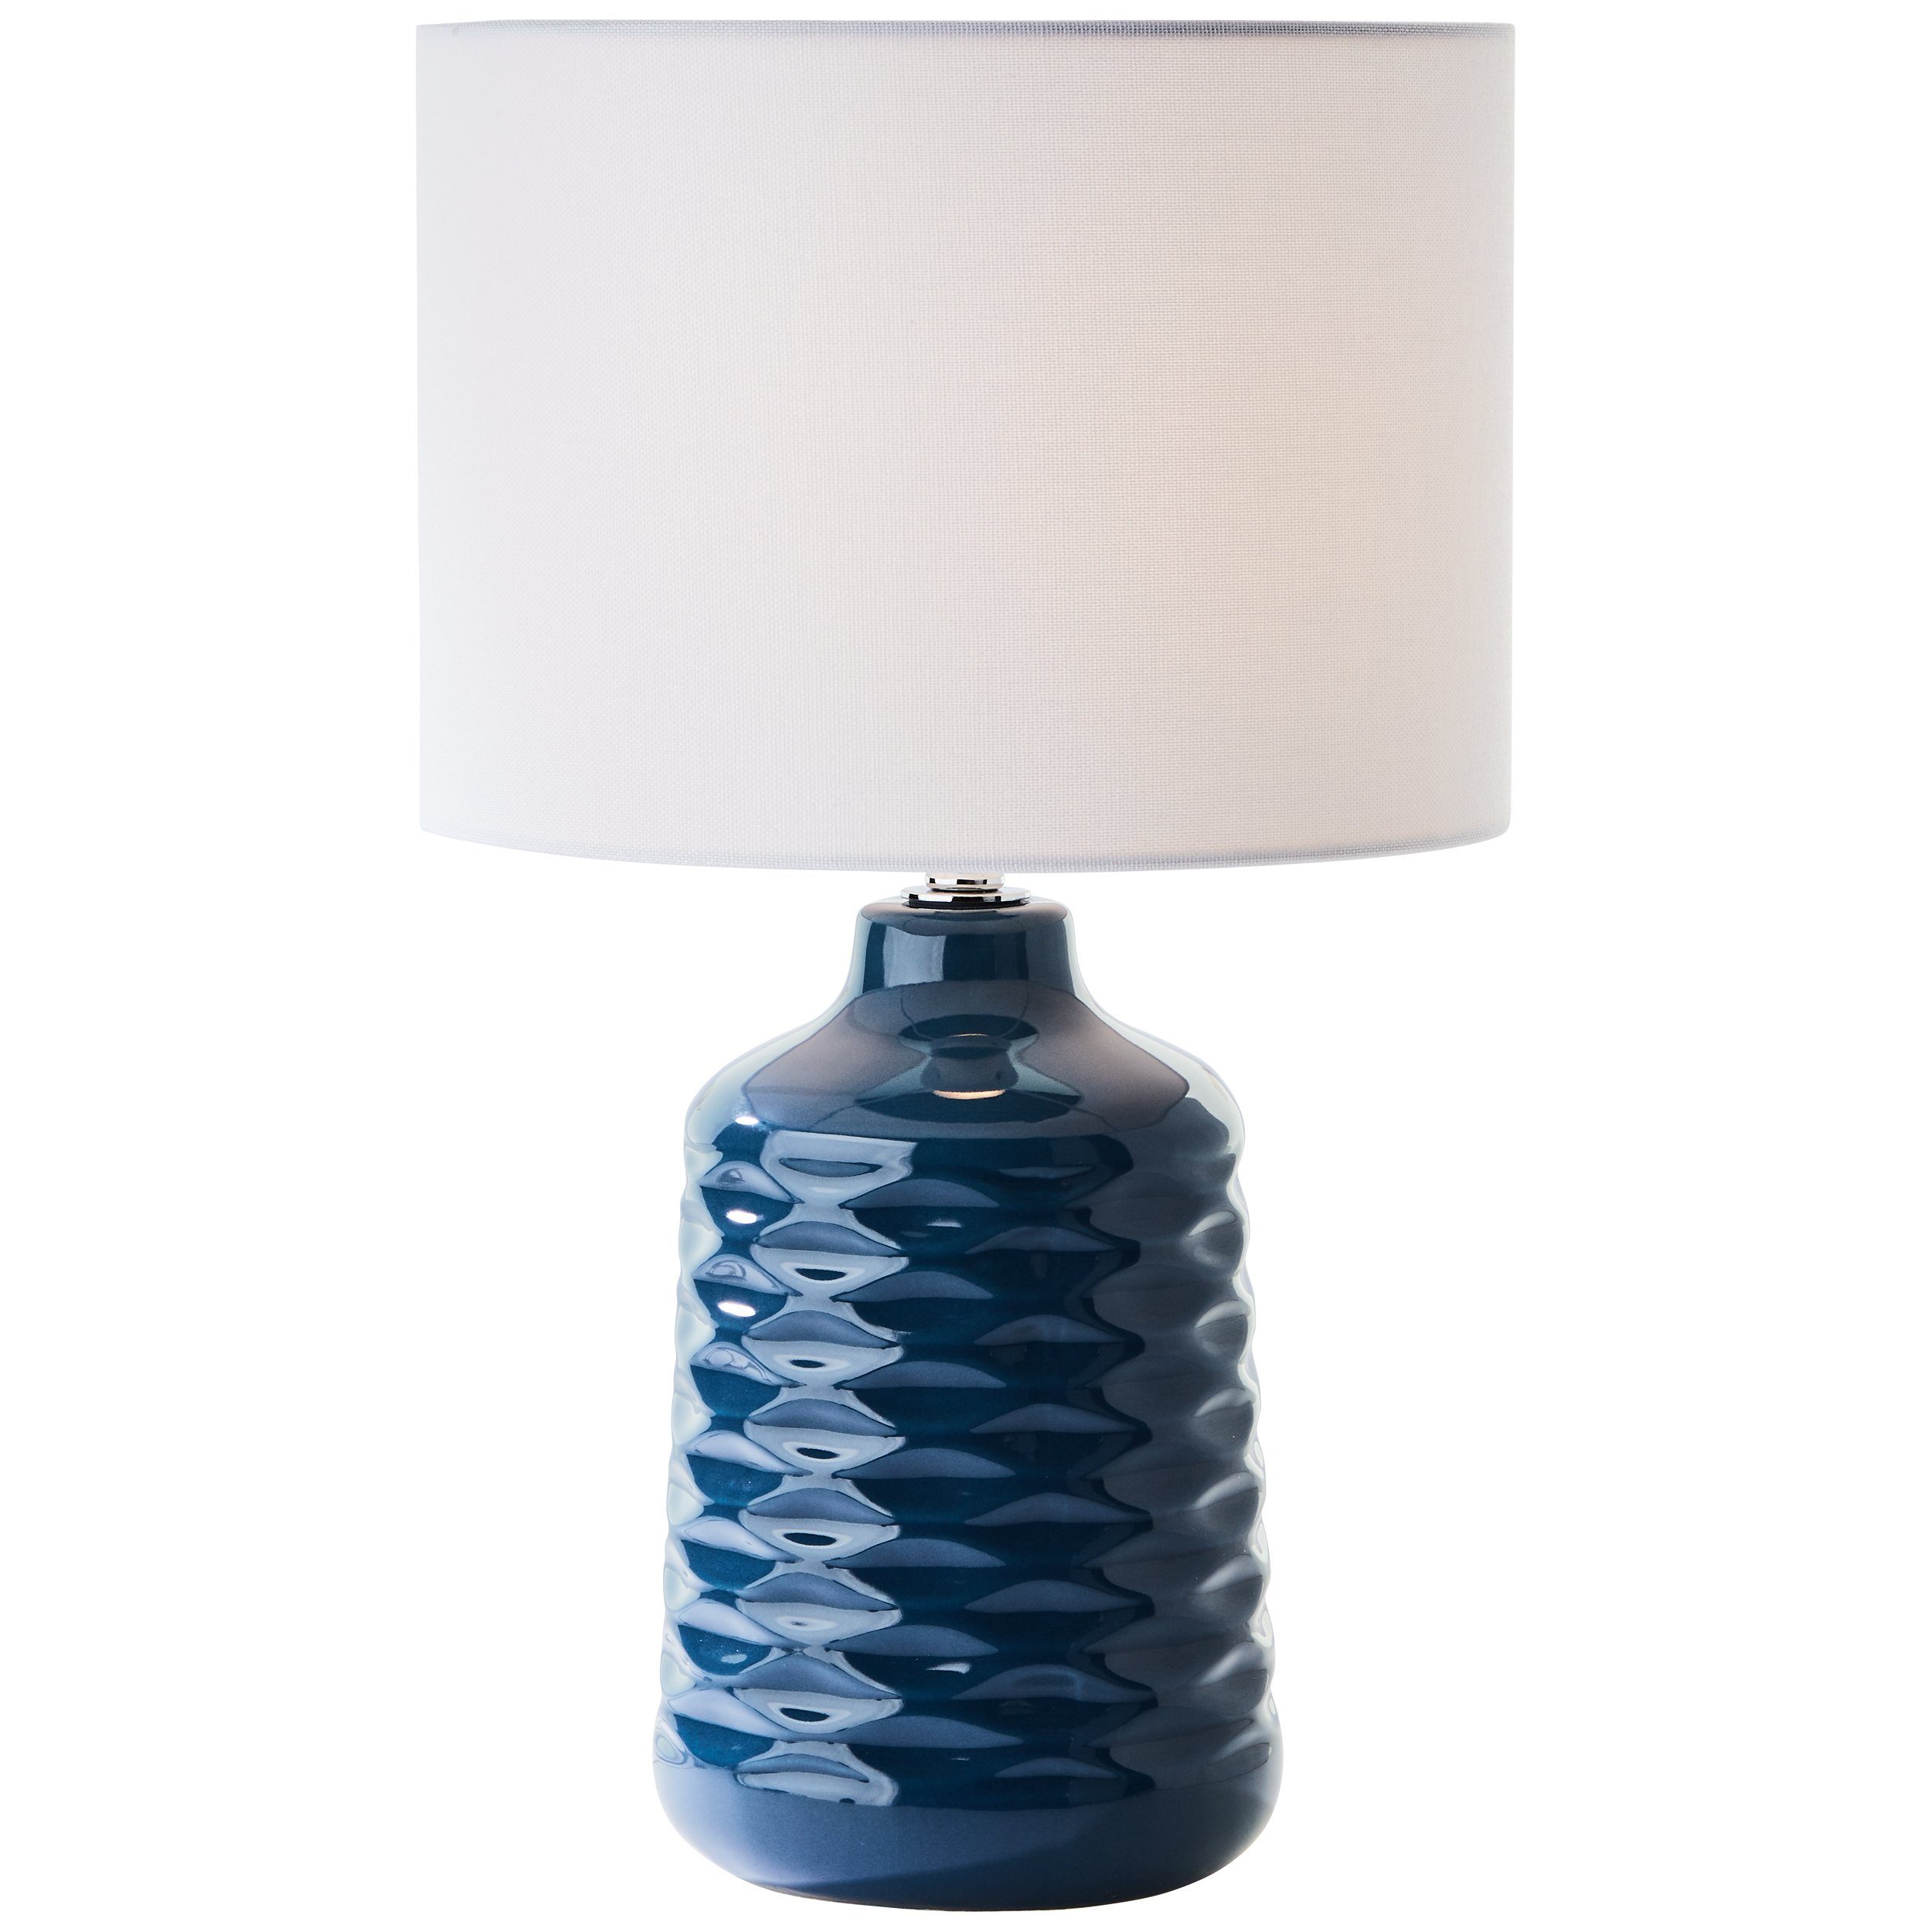 Lightbox Tischleuchte, ohne Leuchtmittel, Keramik Tischlampe mit Stoffschirm, 42 cm Höhe, E14, blau/weiß